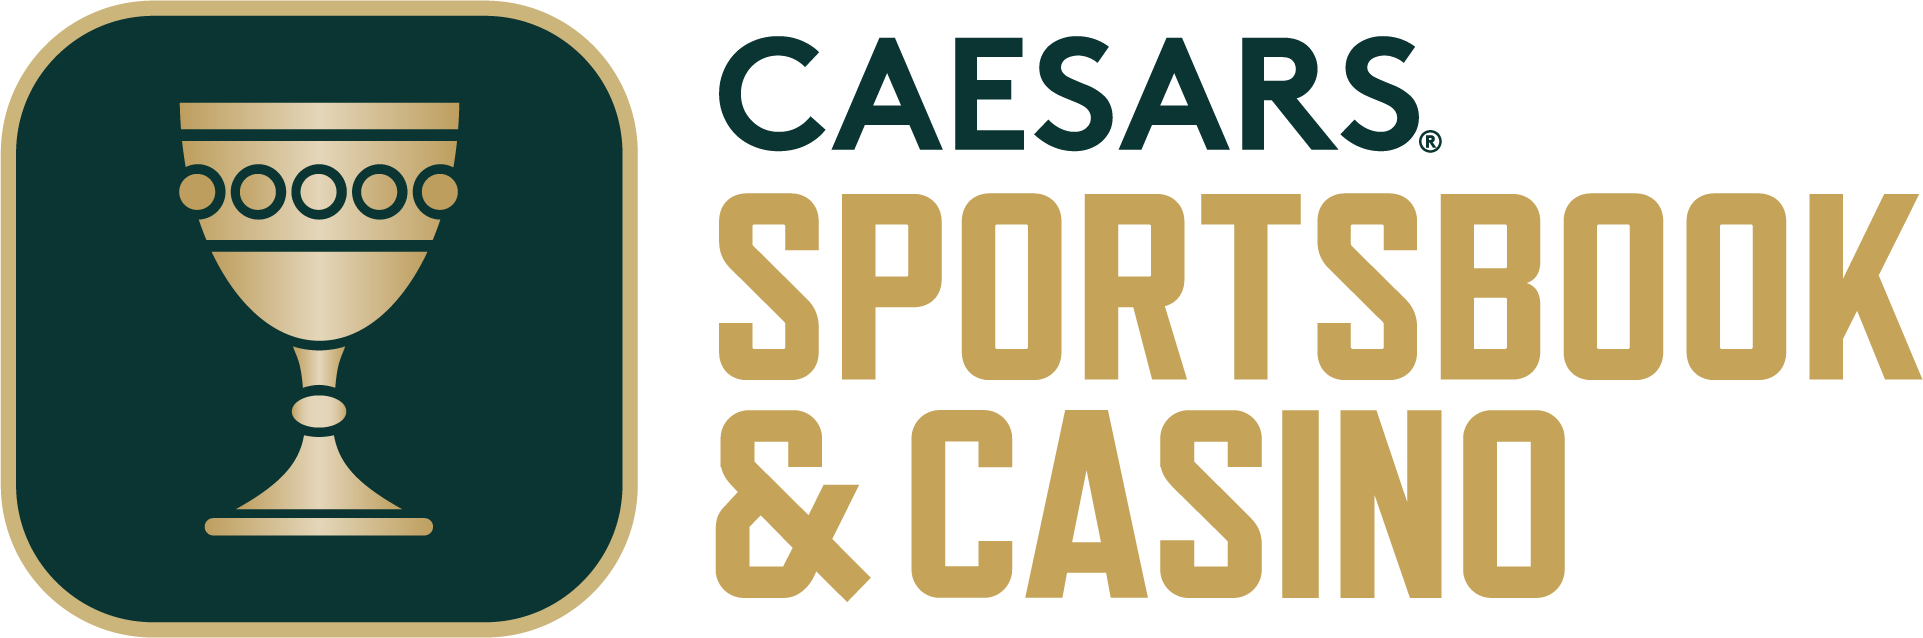 caesars casino and sportsbook